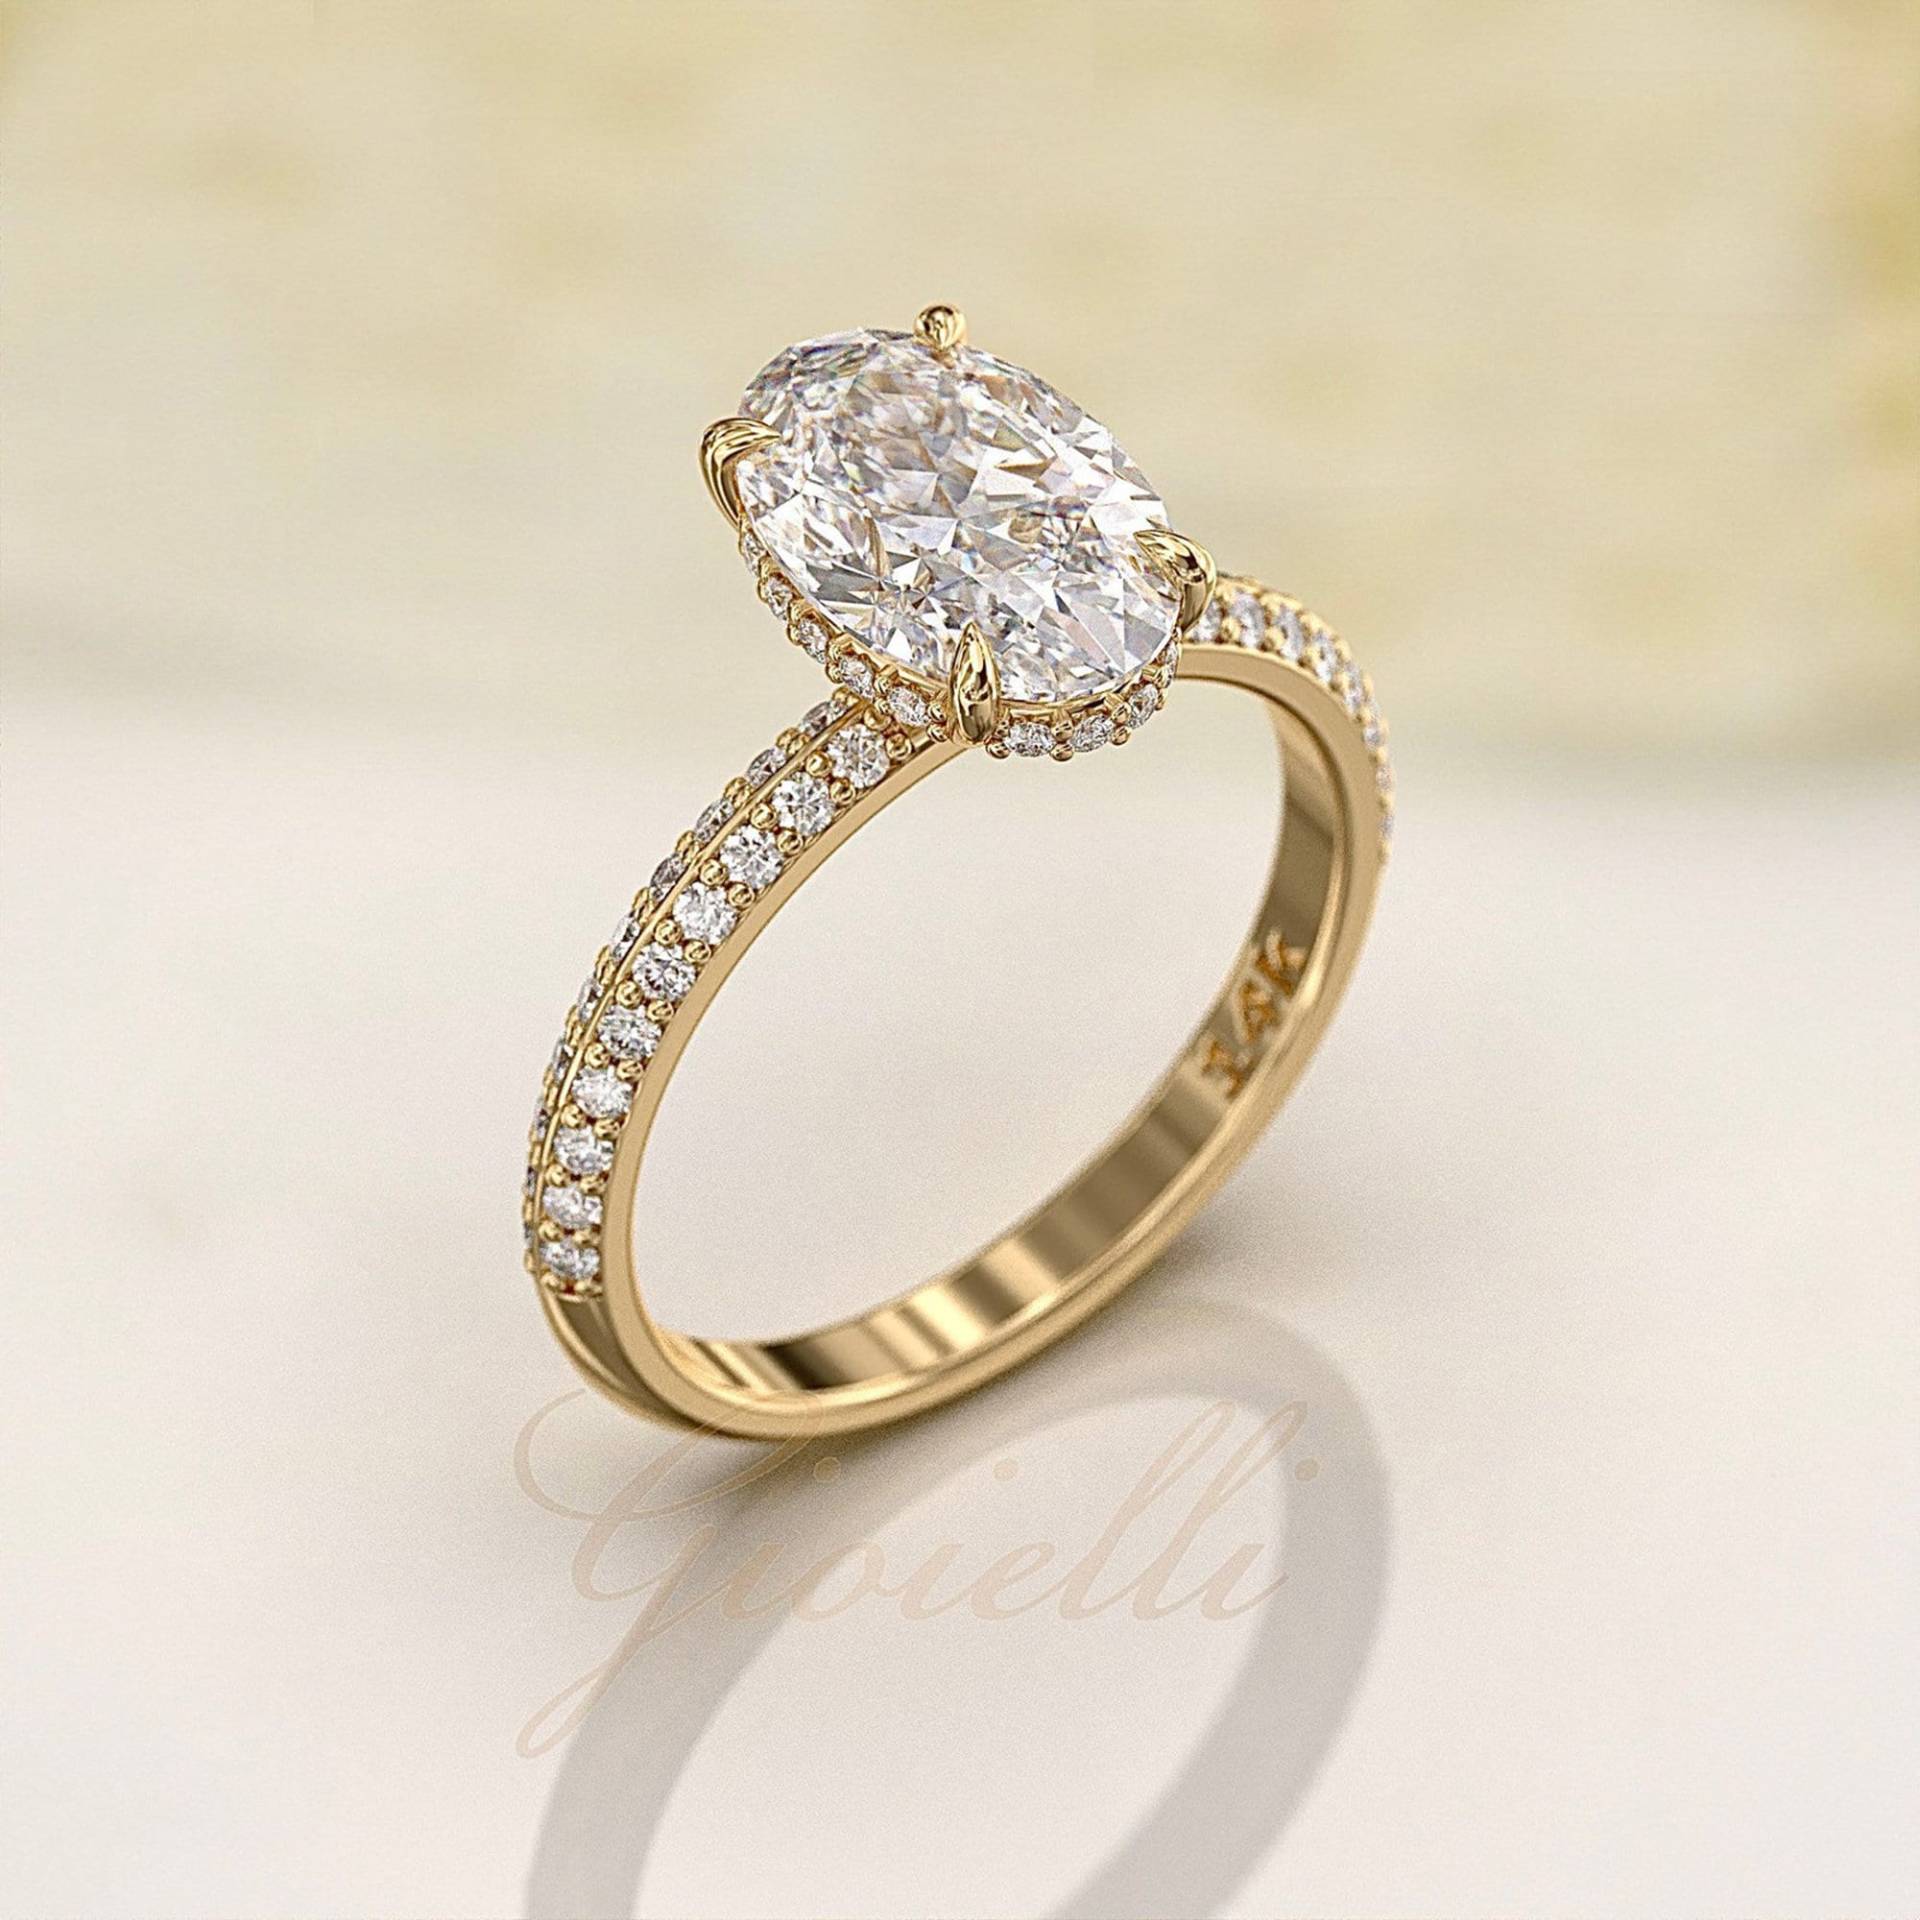 2 Kt Länglicher Ovaler Moissanite-Verlobungsring - Versteckte Halo-Diamantfassung Messerschneide-Diamant-Hochzeitsband Mit von GioielliRings